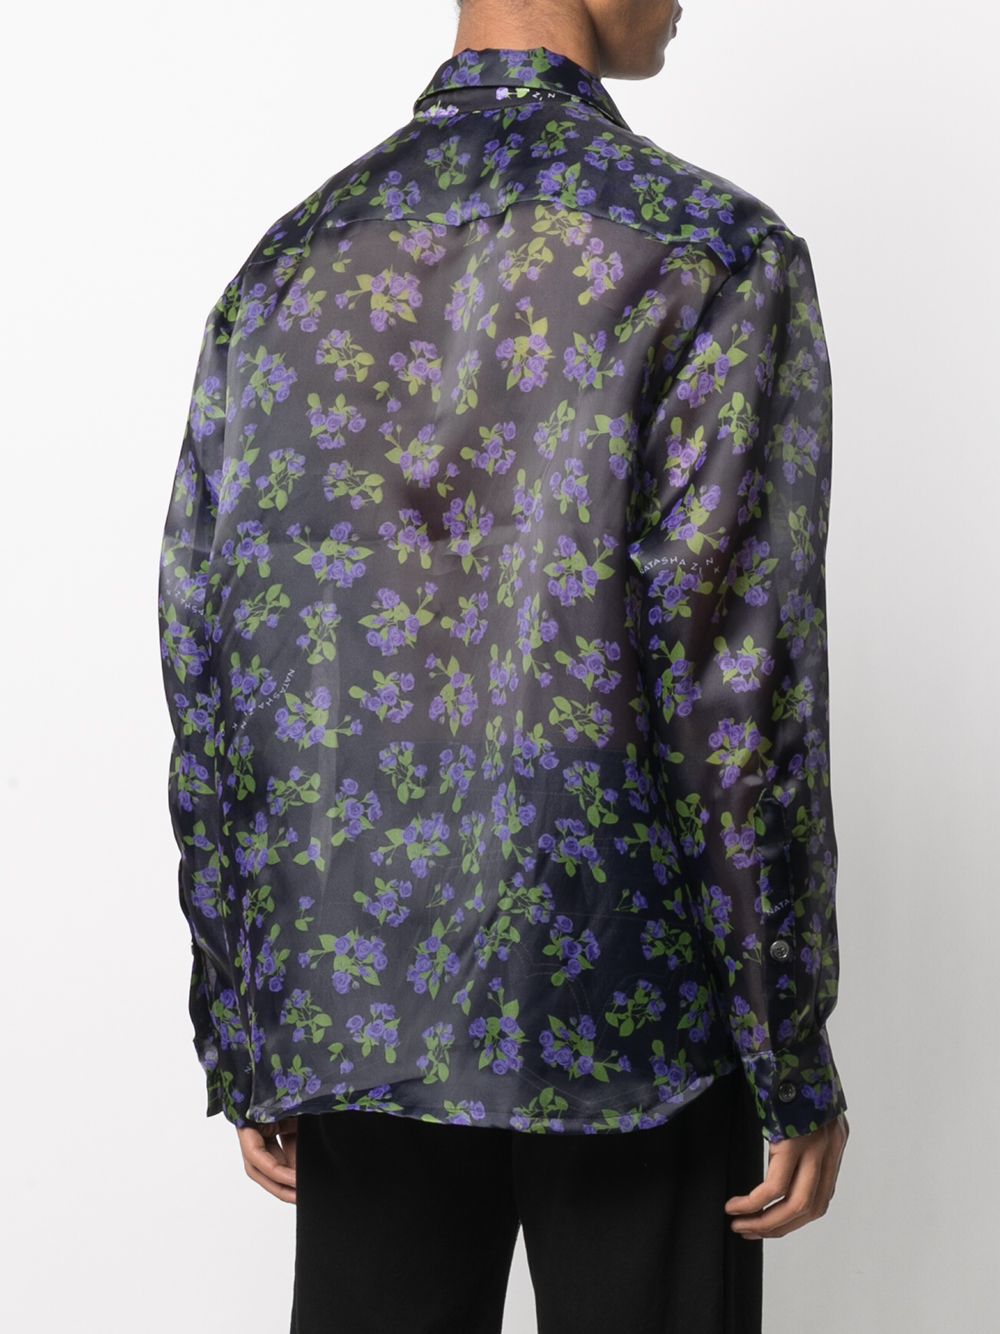 фото Duoltd рубашка с цветочным принтом и запахом